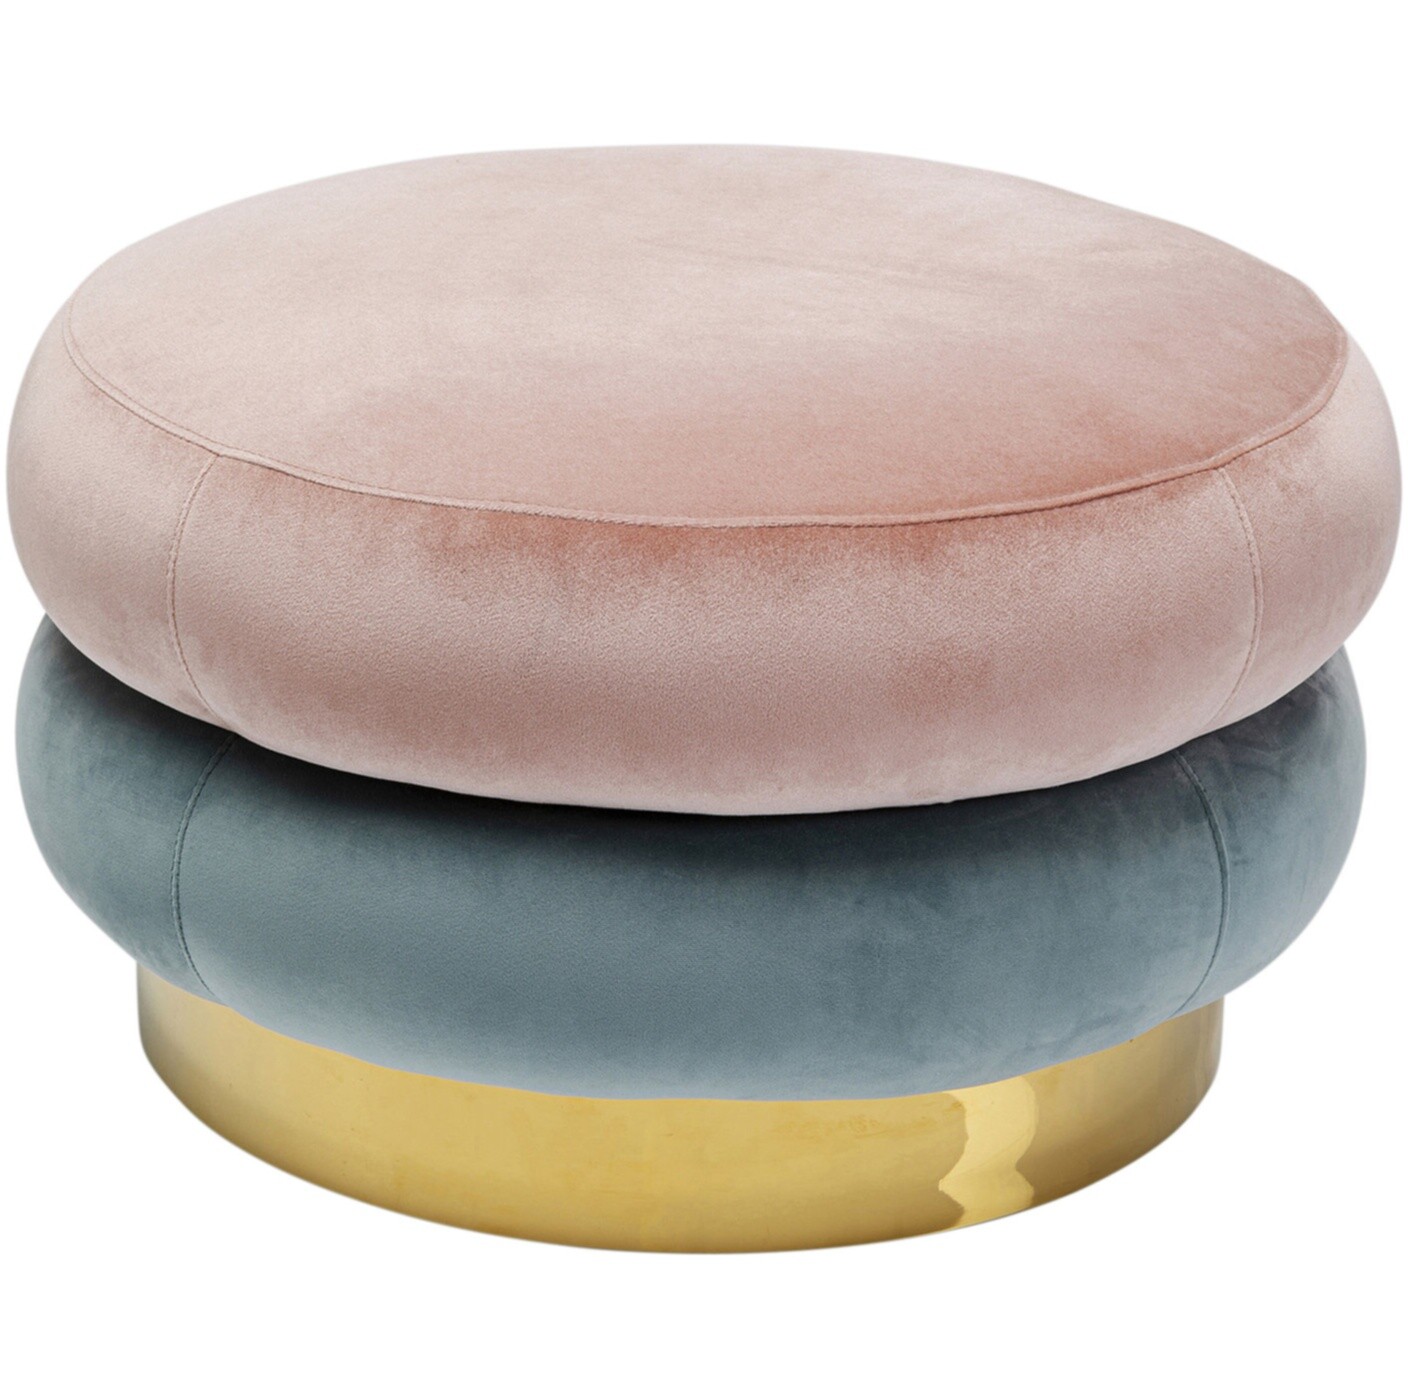 Пуфик мягкий круглый розовый, голубой Sandwich 84813